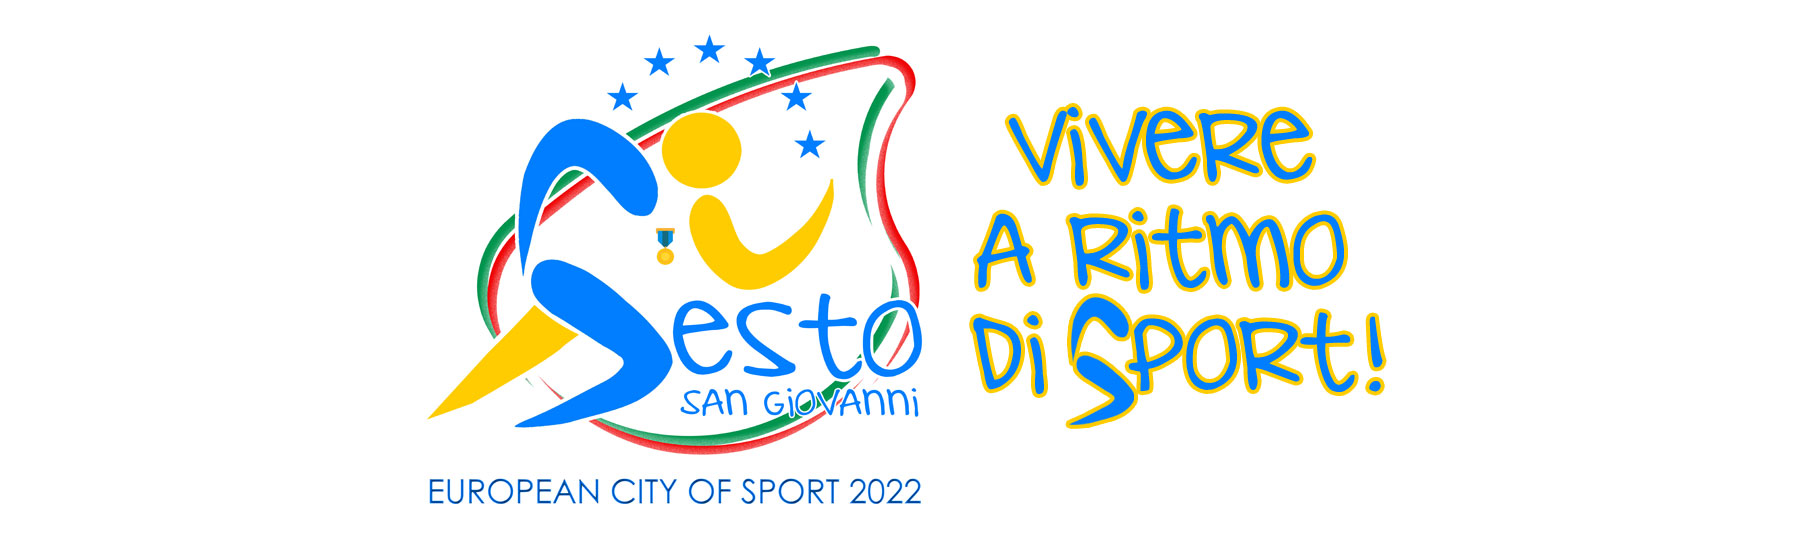 Il logo e il claim della candidatura a Città Europea dello Sport 2022